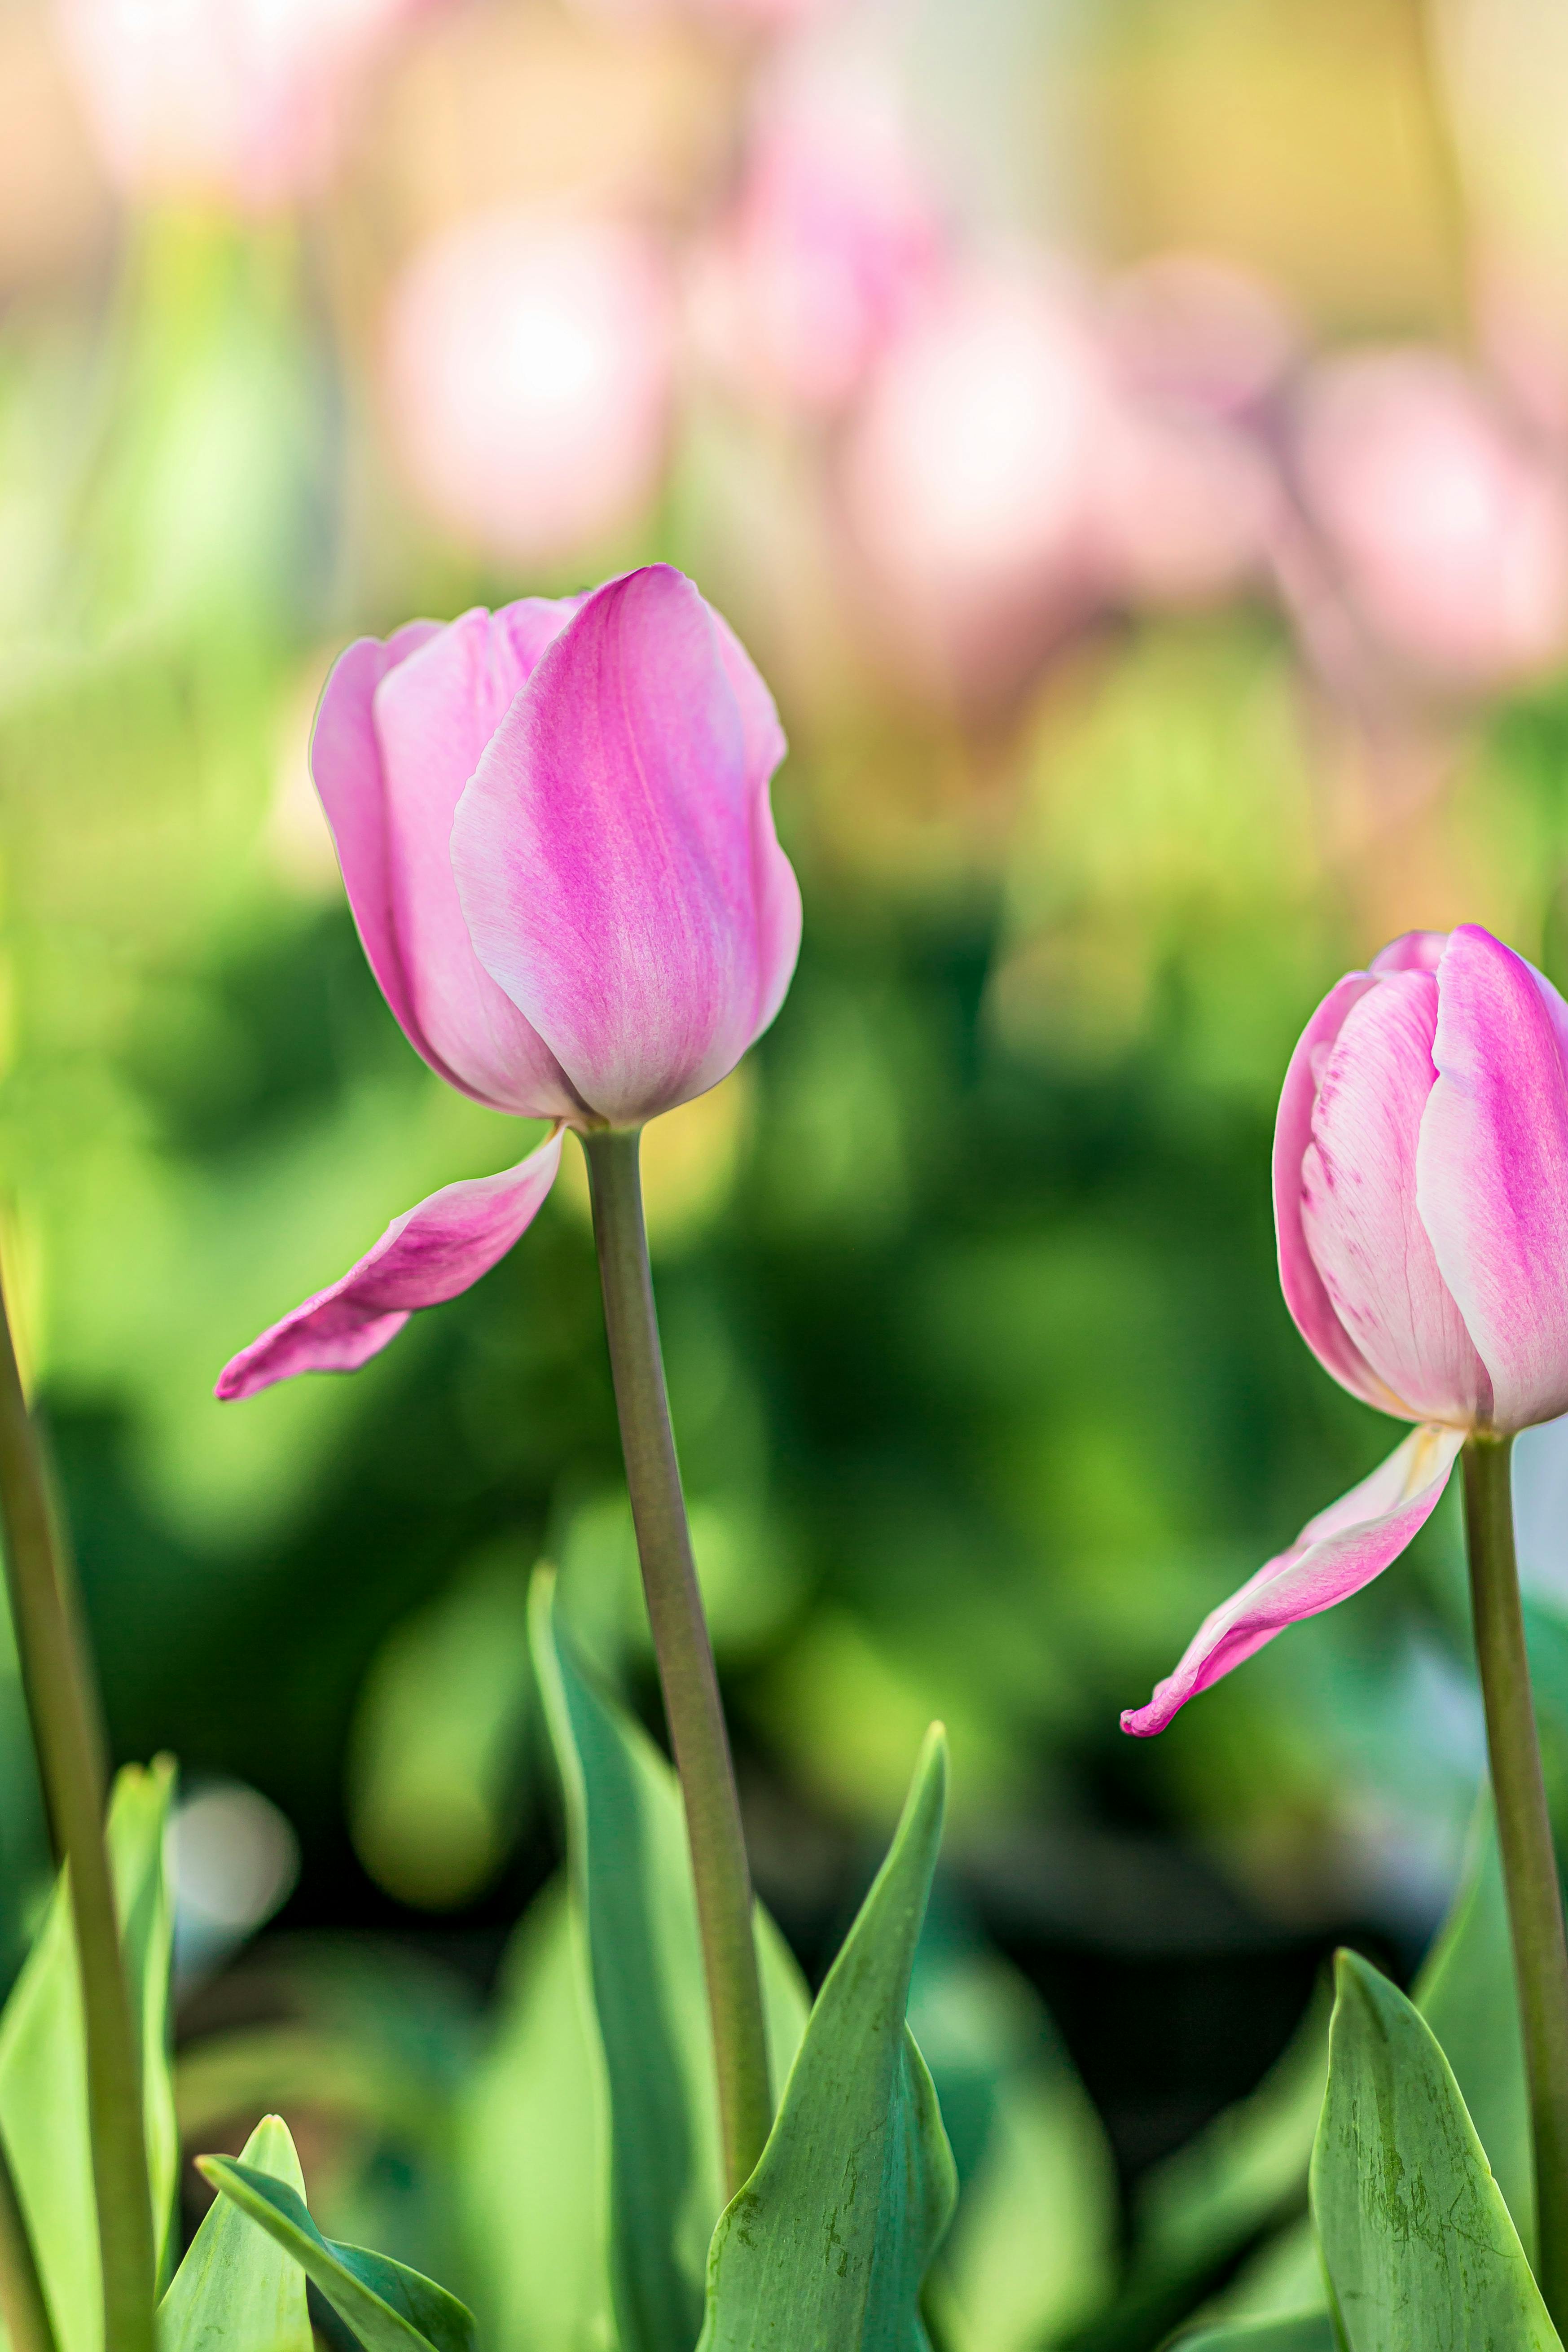 Hoa tulip hồng mang đến một vẻ đẹp tao nhã và trang nhã cho bất kỳ không gian nào. Bạn chỉ cần nhìn vào chúng là lập tức cảm thấy được sự hài lòng và sự tươi mới của mùa xuân. Đừng bỏ lỡ cơ hội ngắm nhìn hình ảnh hoa tulip hồng đầy quyến rũ.